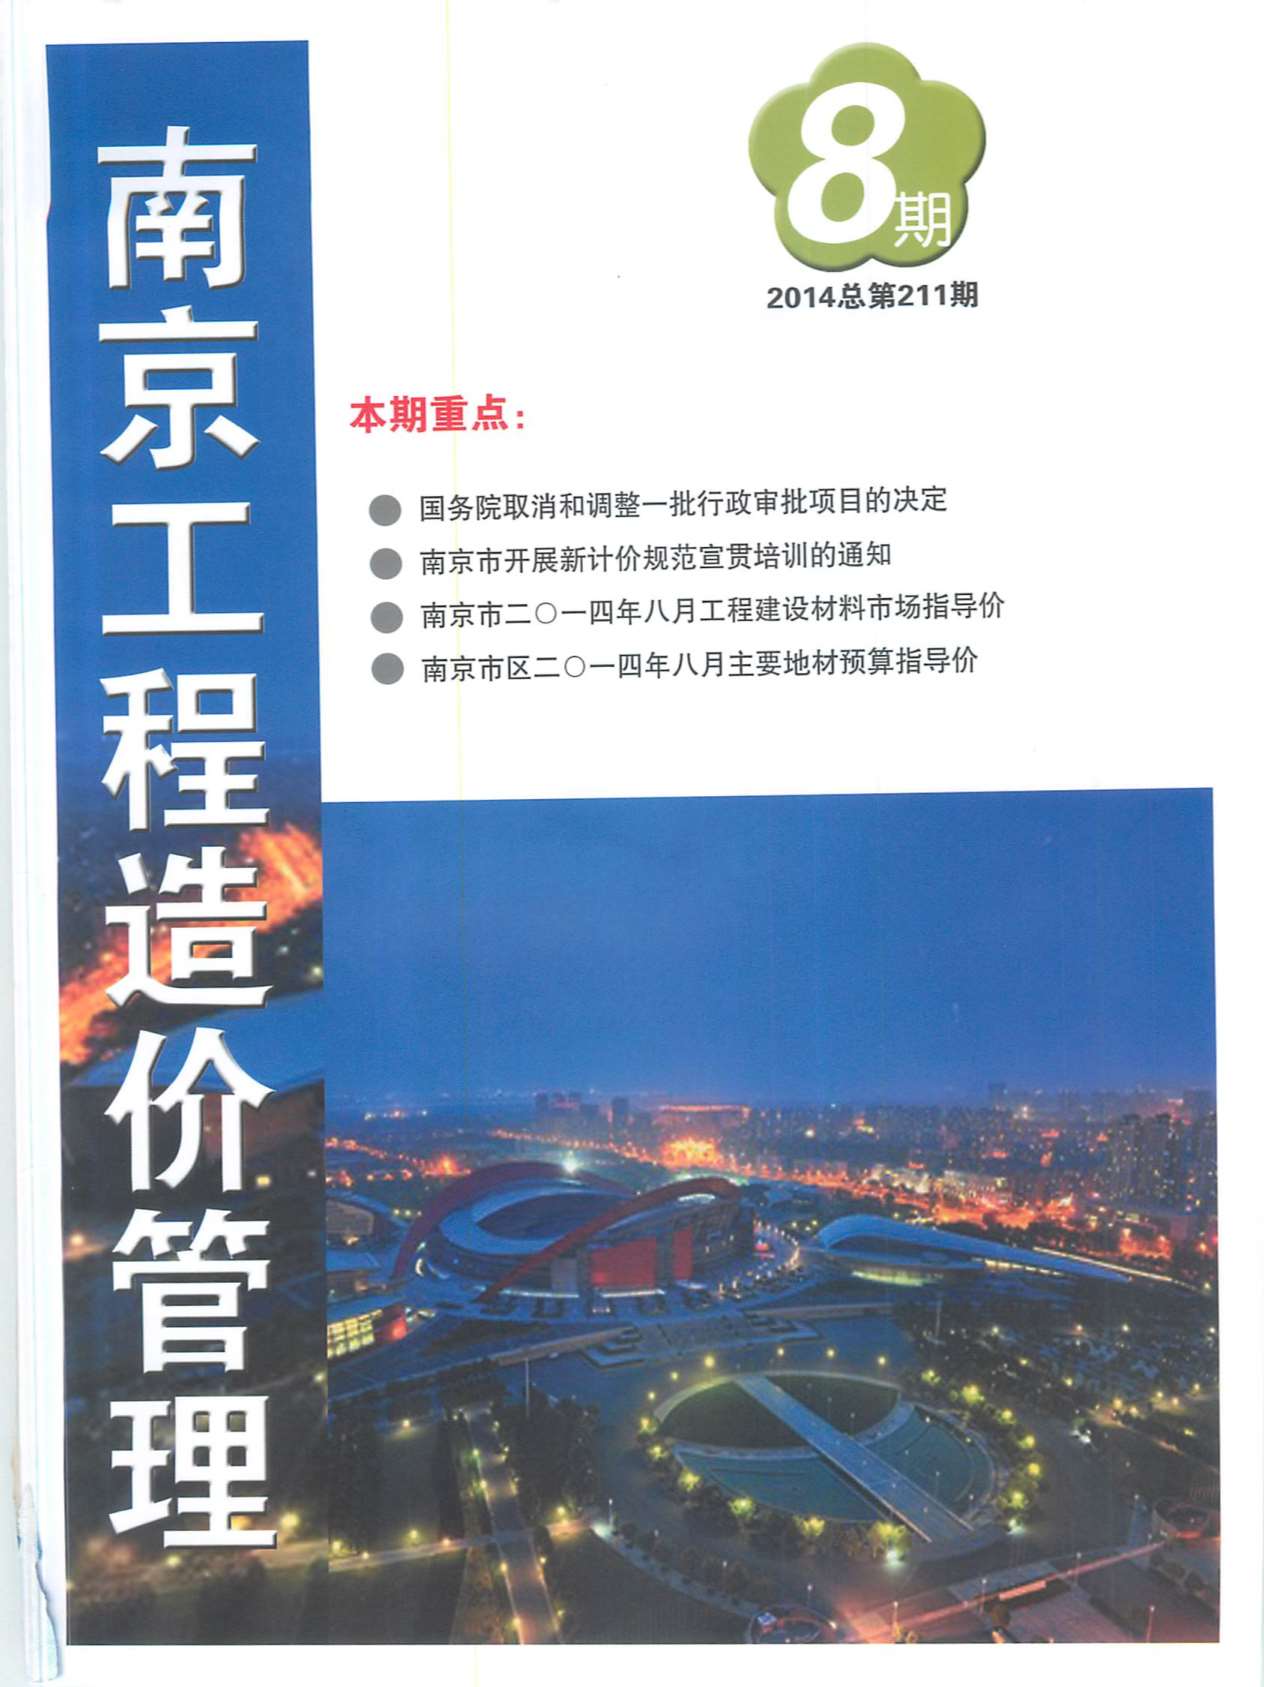 南京市2014年8月造价库文件造价库文件网